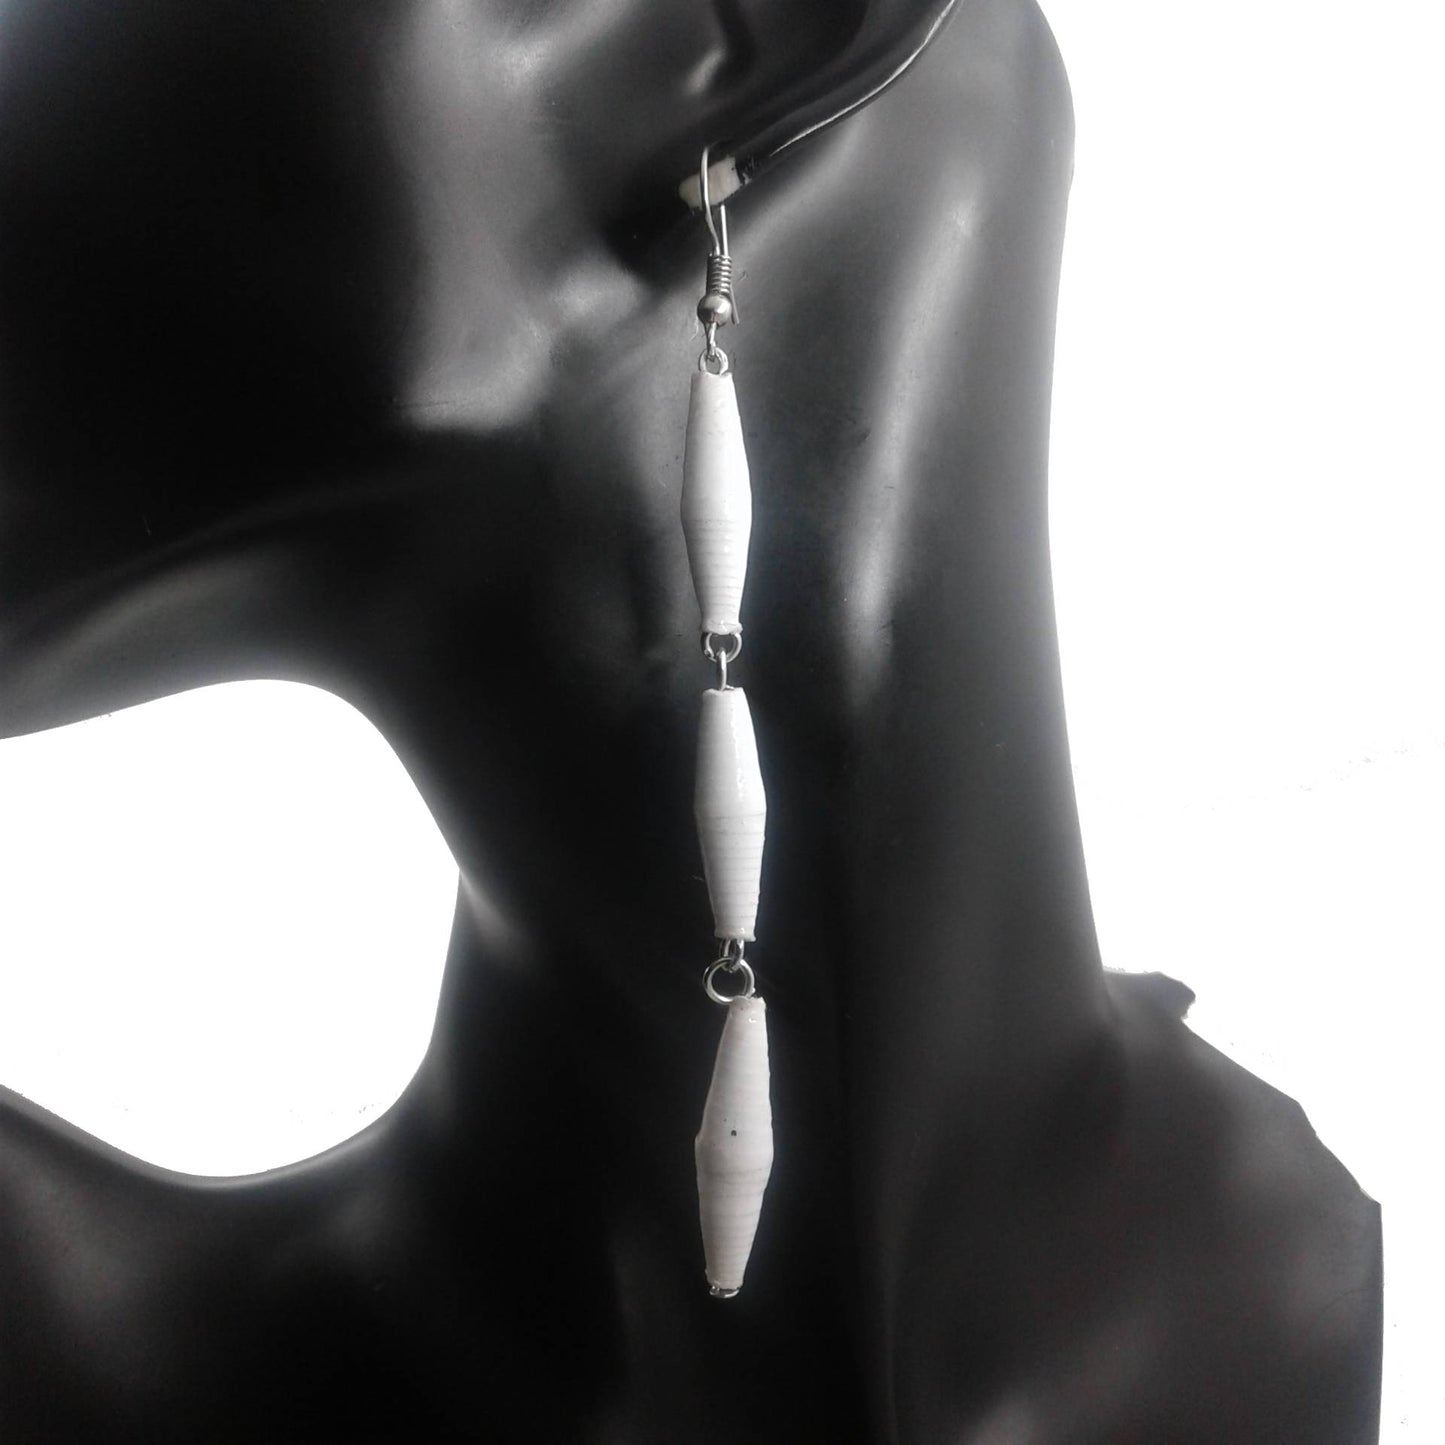 Long white earrings on a black mannequin